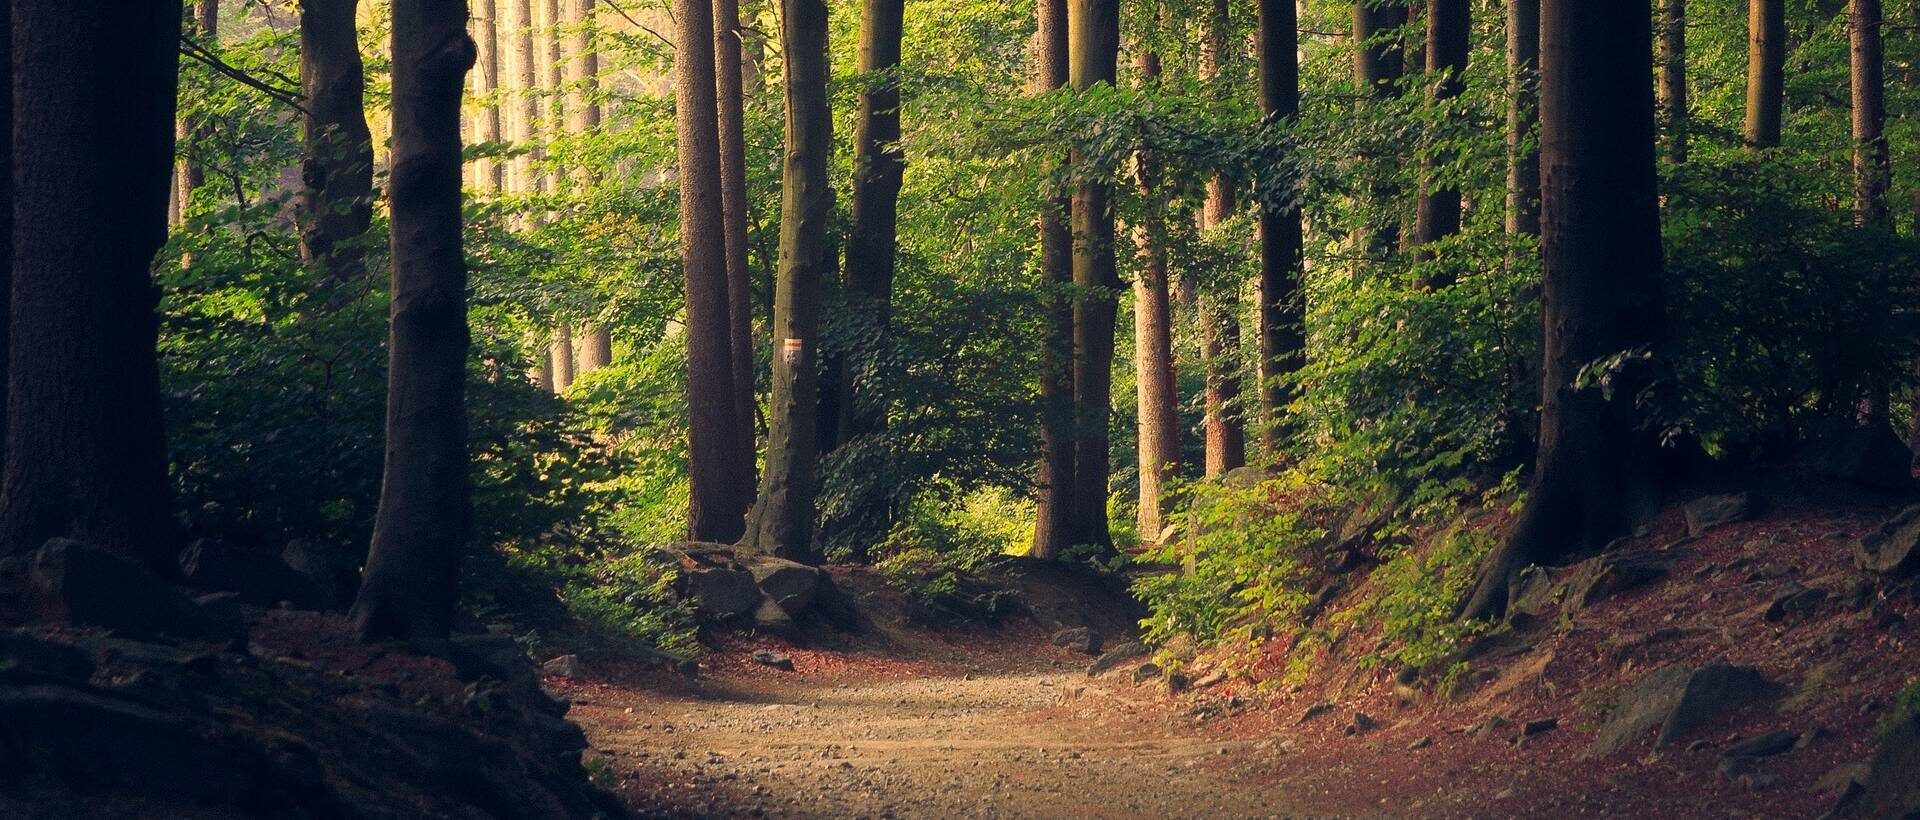 Bild mit einem Weg in einem Wald, wobei der Weg den Leitfaden repräsentieren soll.